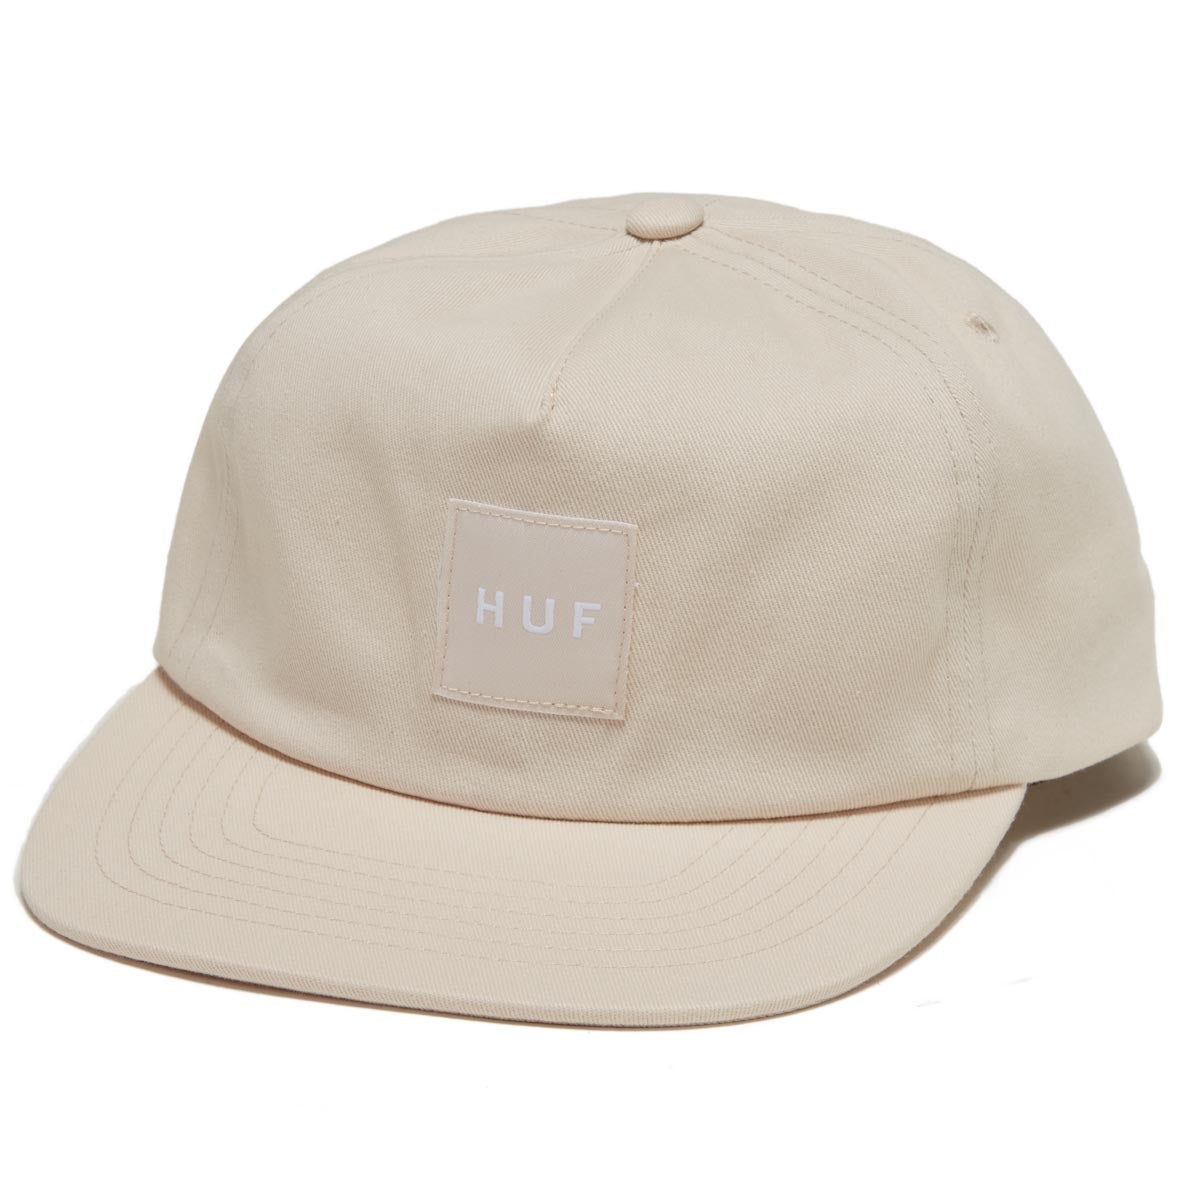 HUF Set Box Snapback Hat - Ivory image 1